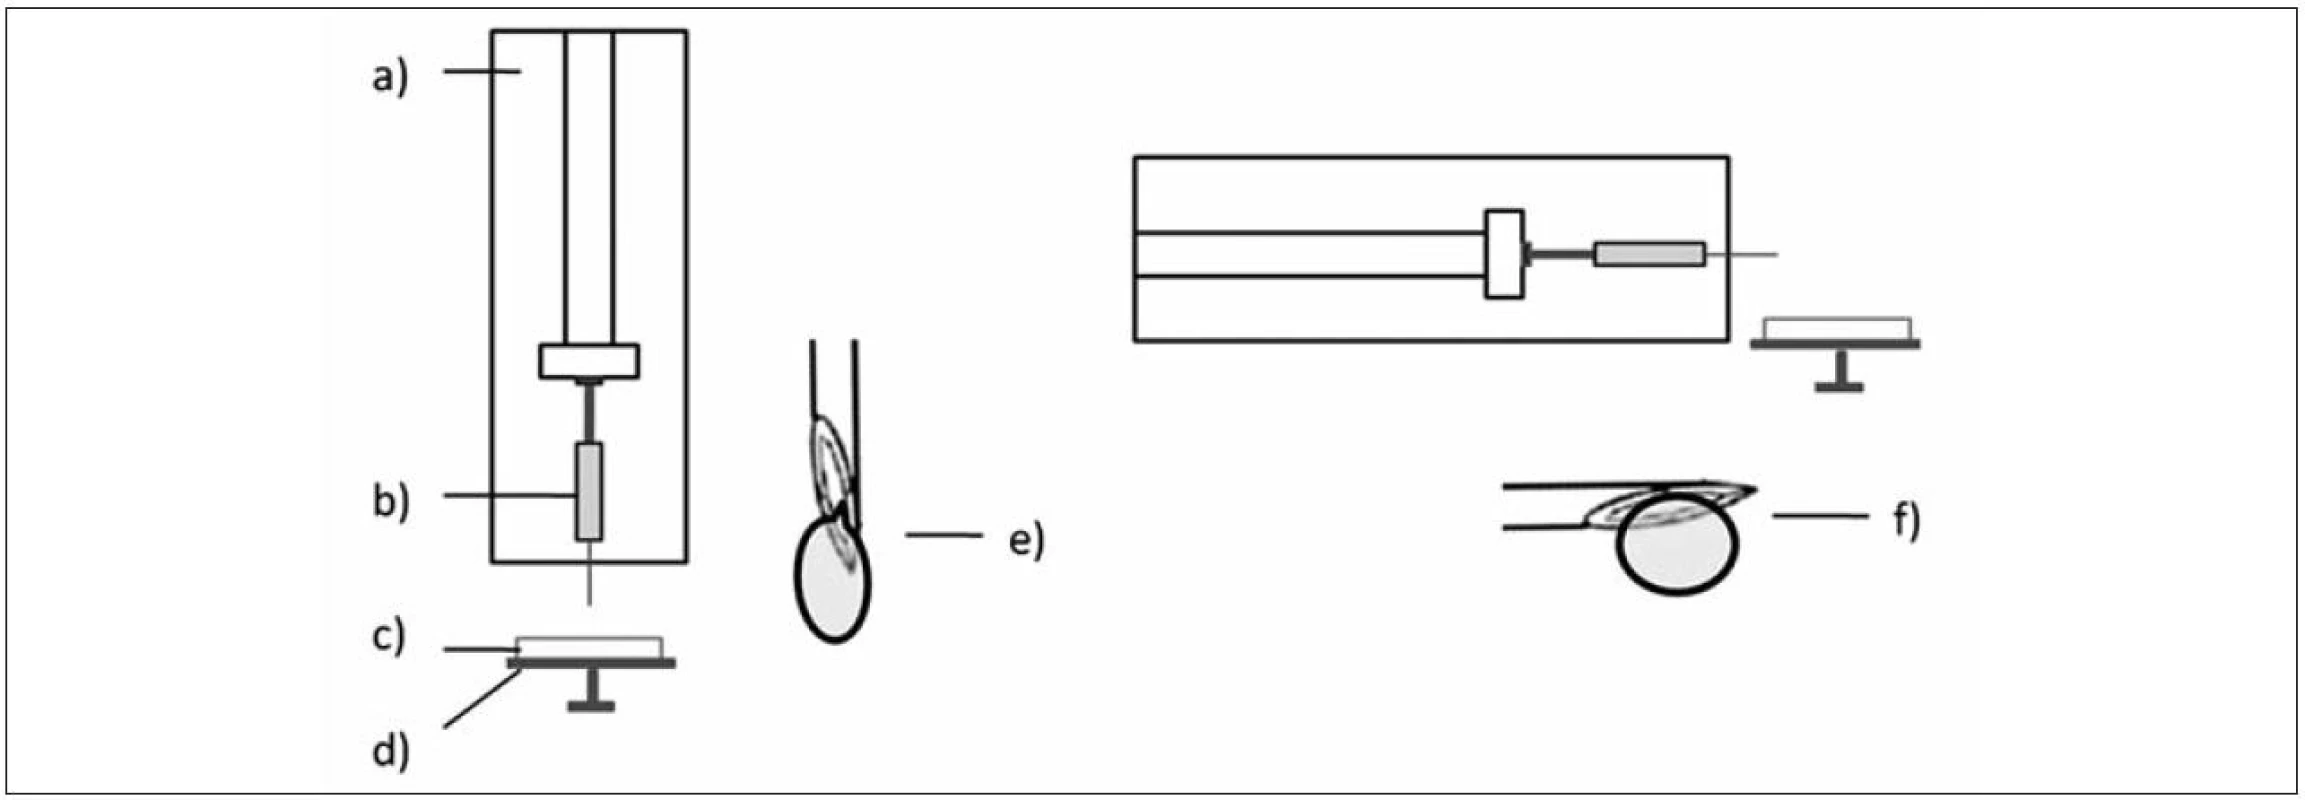 Poloha přístroje vertikální (vlevo) a horizontální (vpravo); a) lineární dávkovač, b) injekční stříkačka, c) tvrdící lázeň, d) podložka otáčející se kolem své osy, e) detail ostří jehly a tvorby kapky ve vertikální poloze, f) detail ostří jehly a tvorby kapky v horizontální poloze